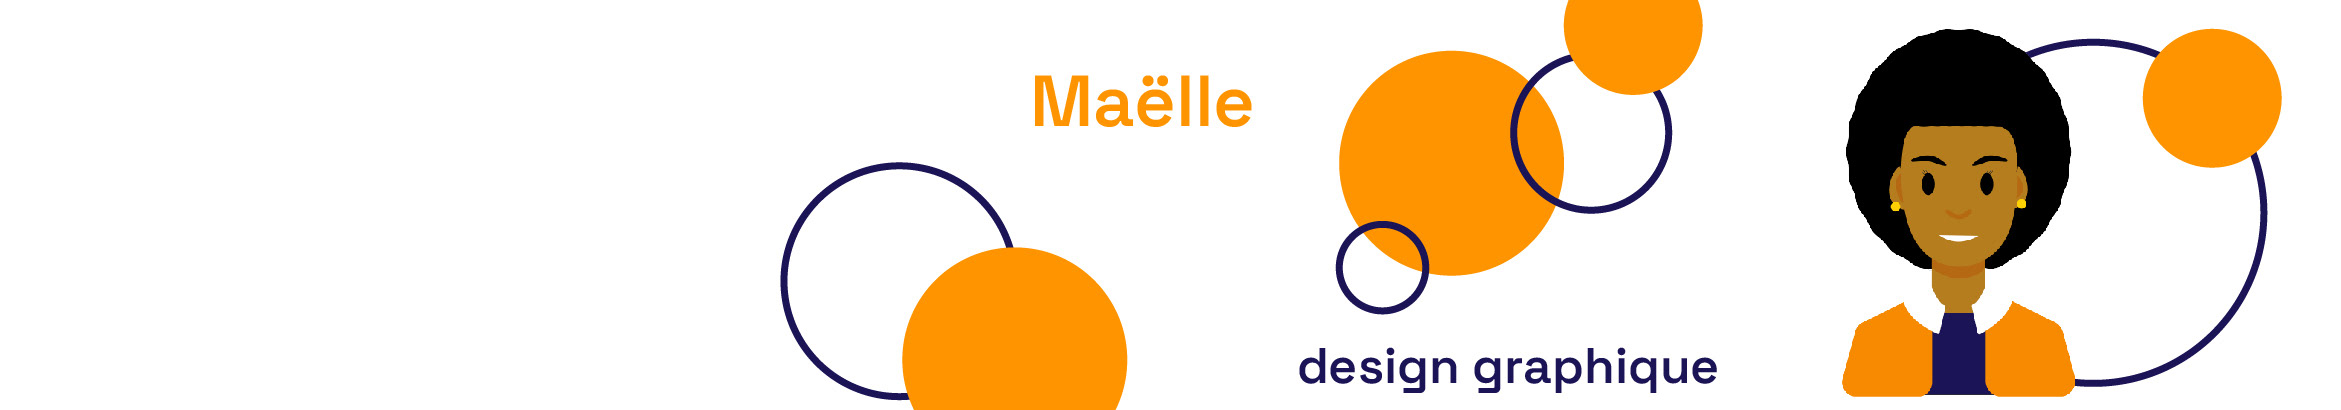 Баннер профиля Maelle ROULIS